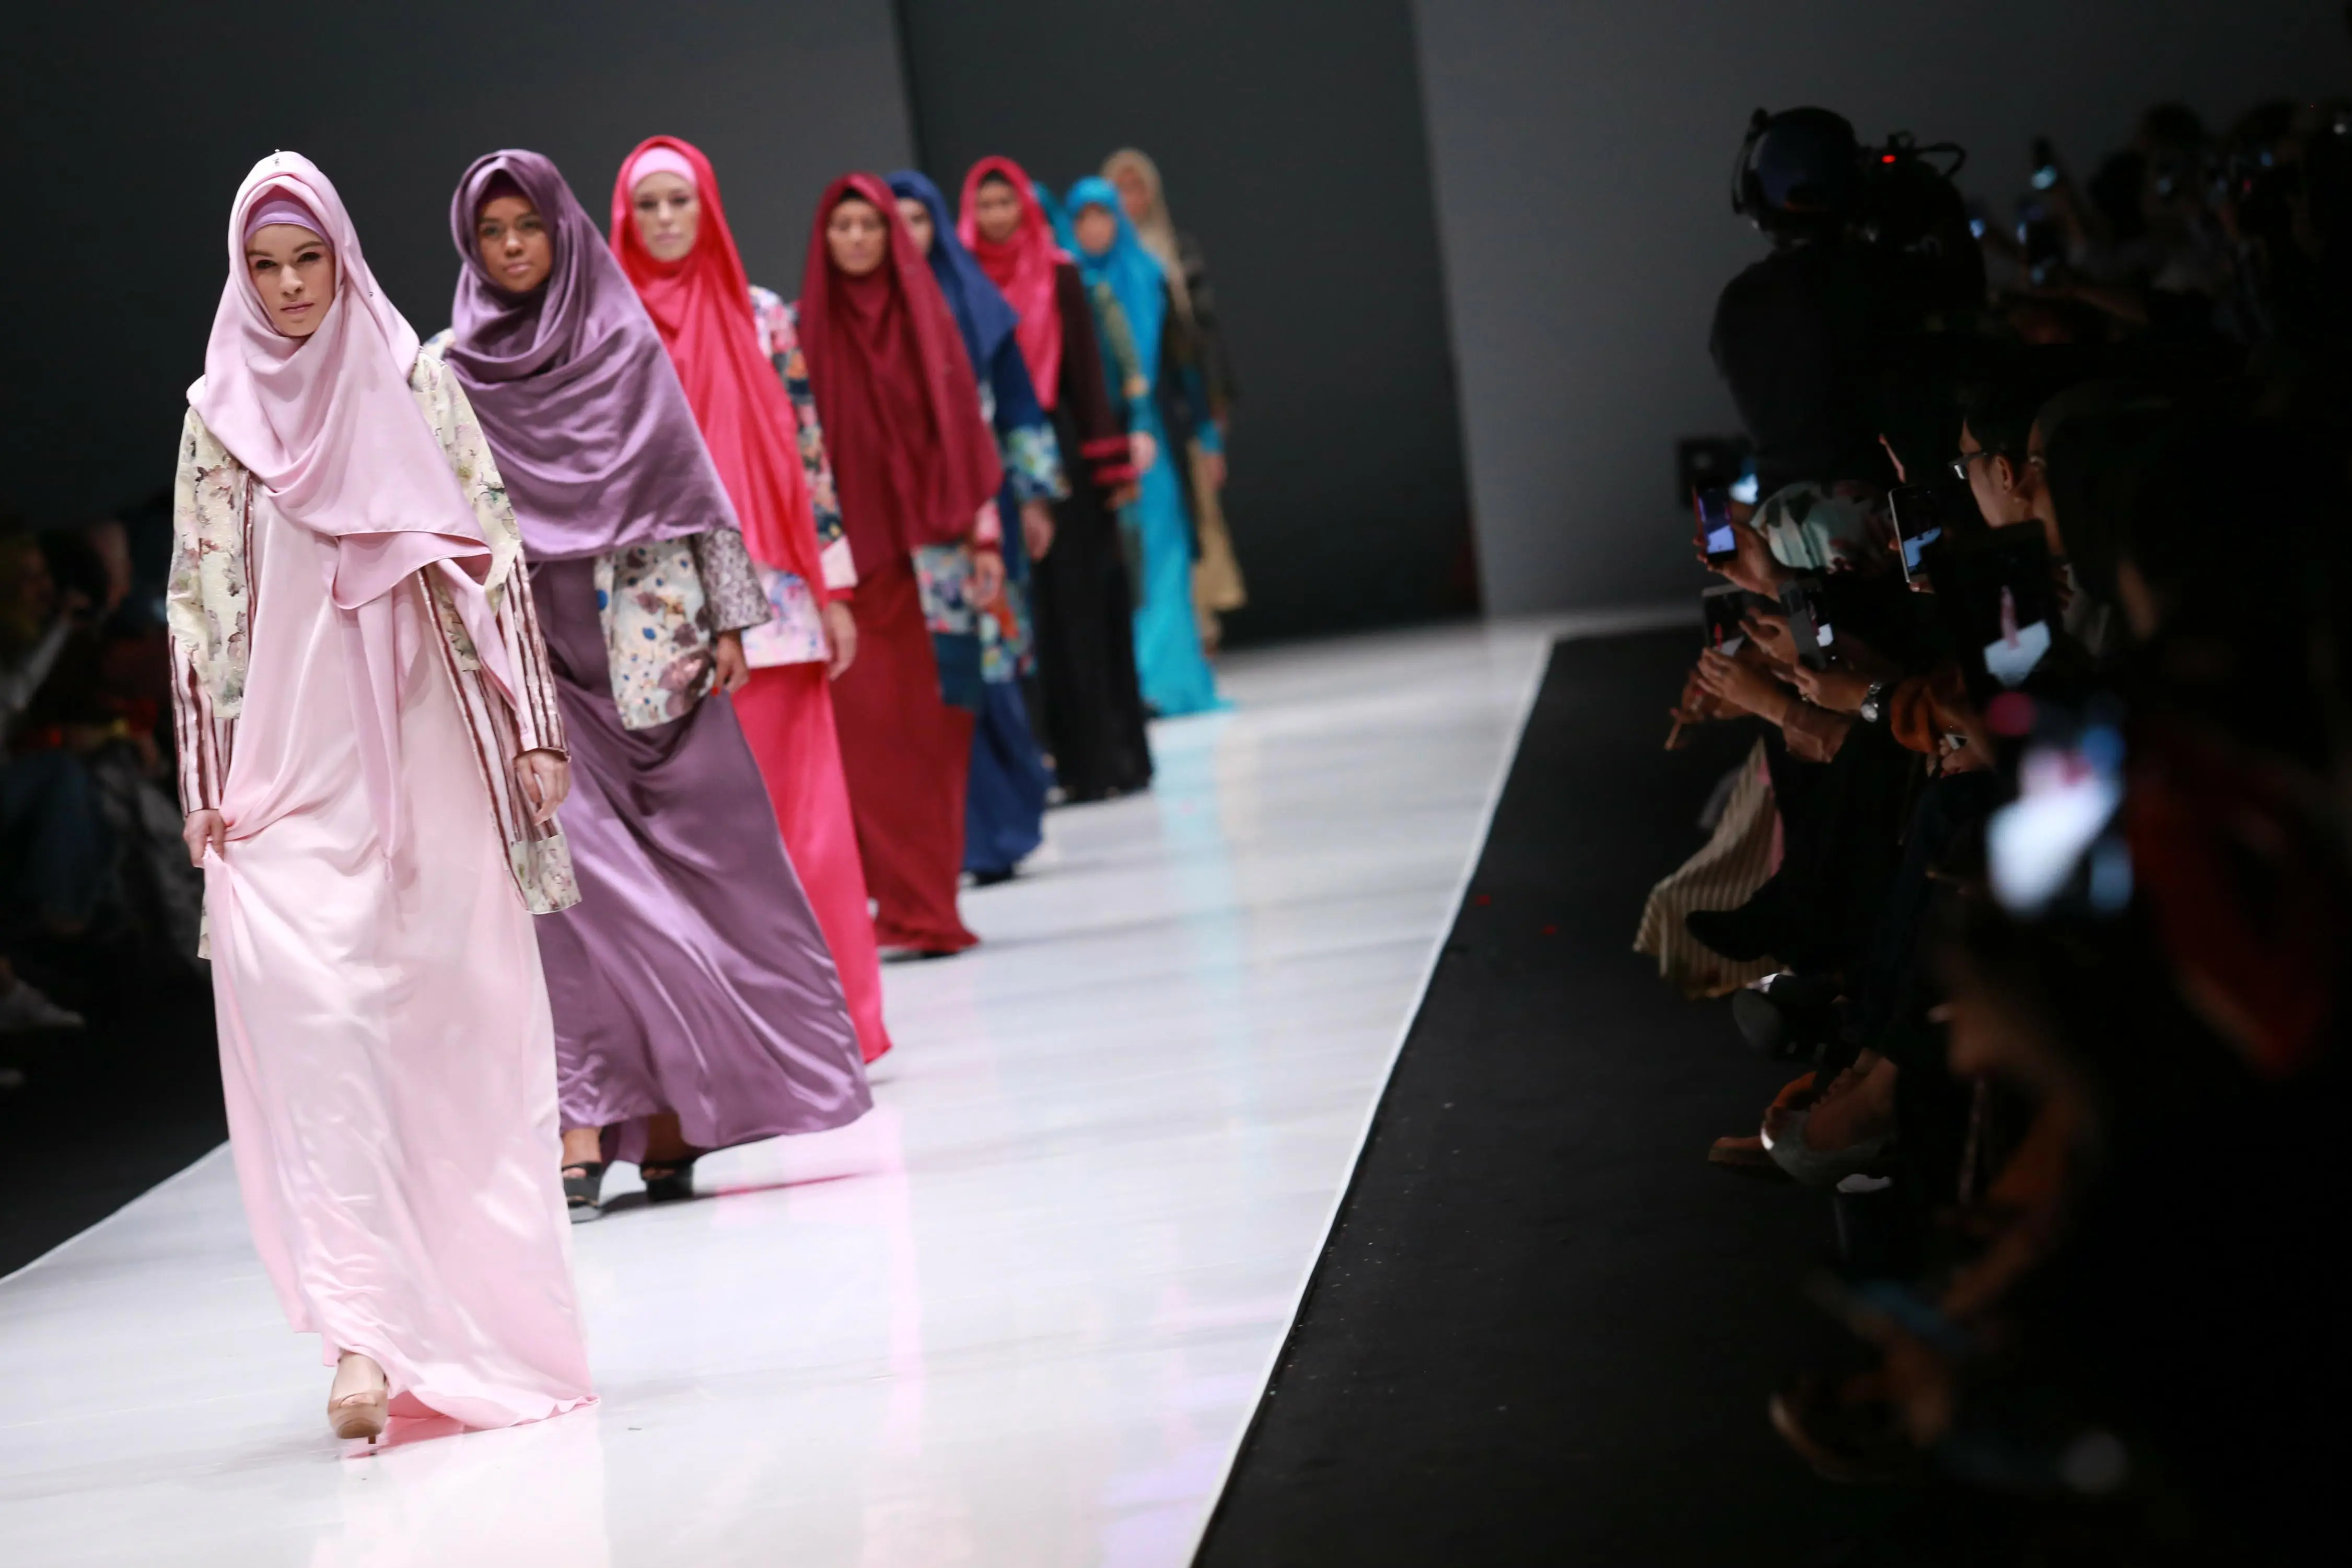 Beberapa hari setelah pulang dari Jerman, Oki ia mengenalkan busana alternatif bagi para muslimah. 15 koleksi dengan tema coat dipamerkan dalam acara Jakarta Fashion Week (JFW) 2017. (Adrian Putra/Bintang.com)